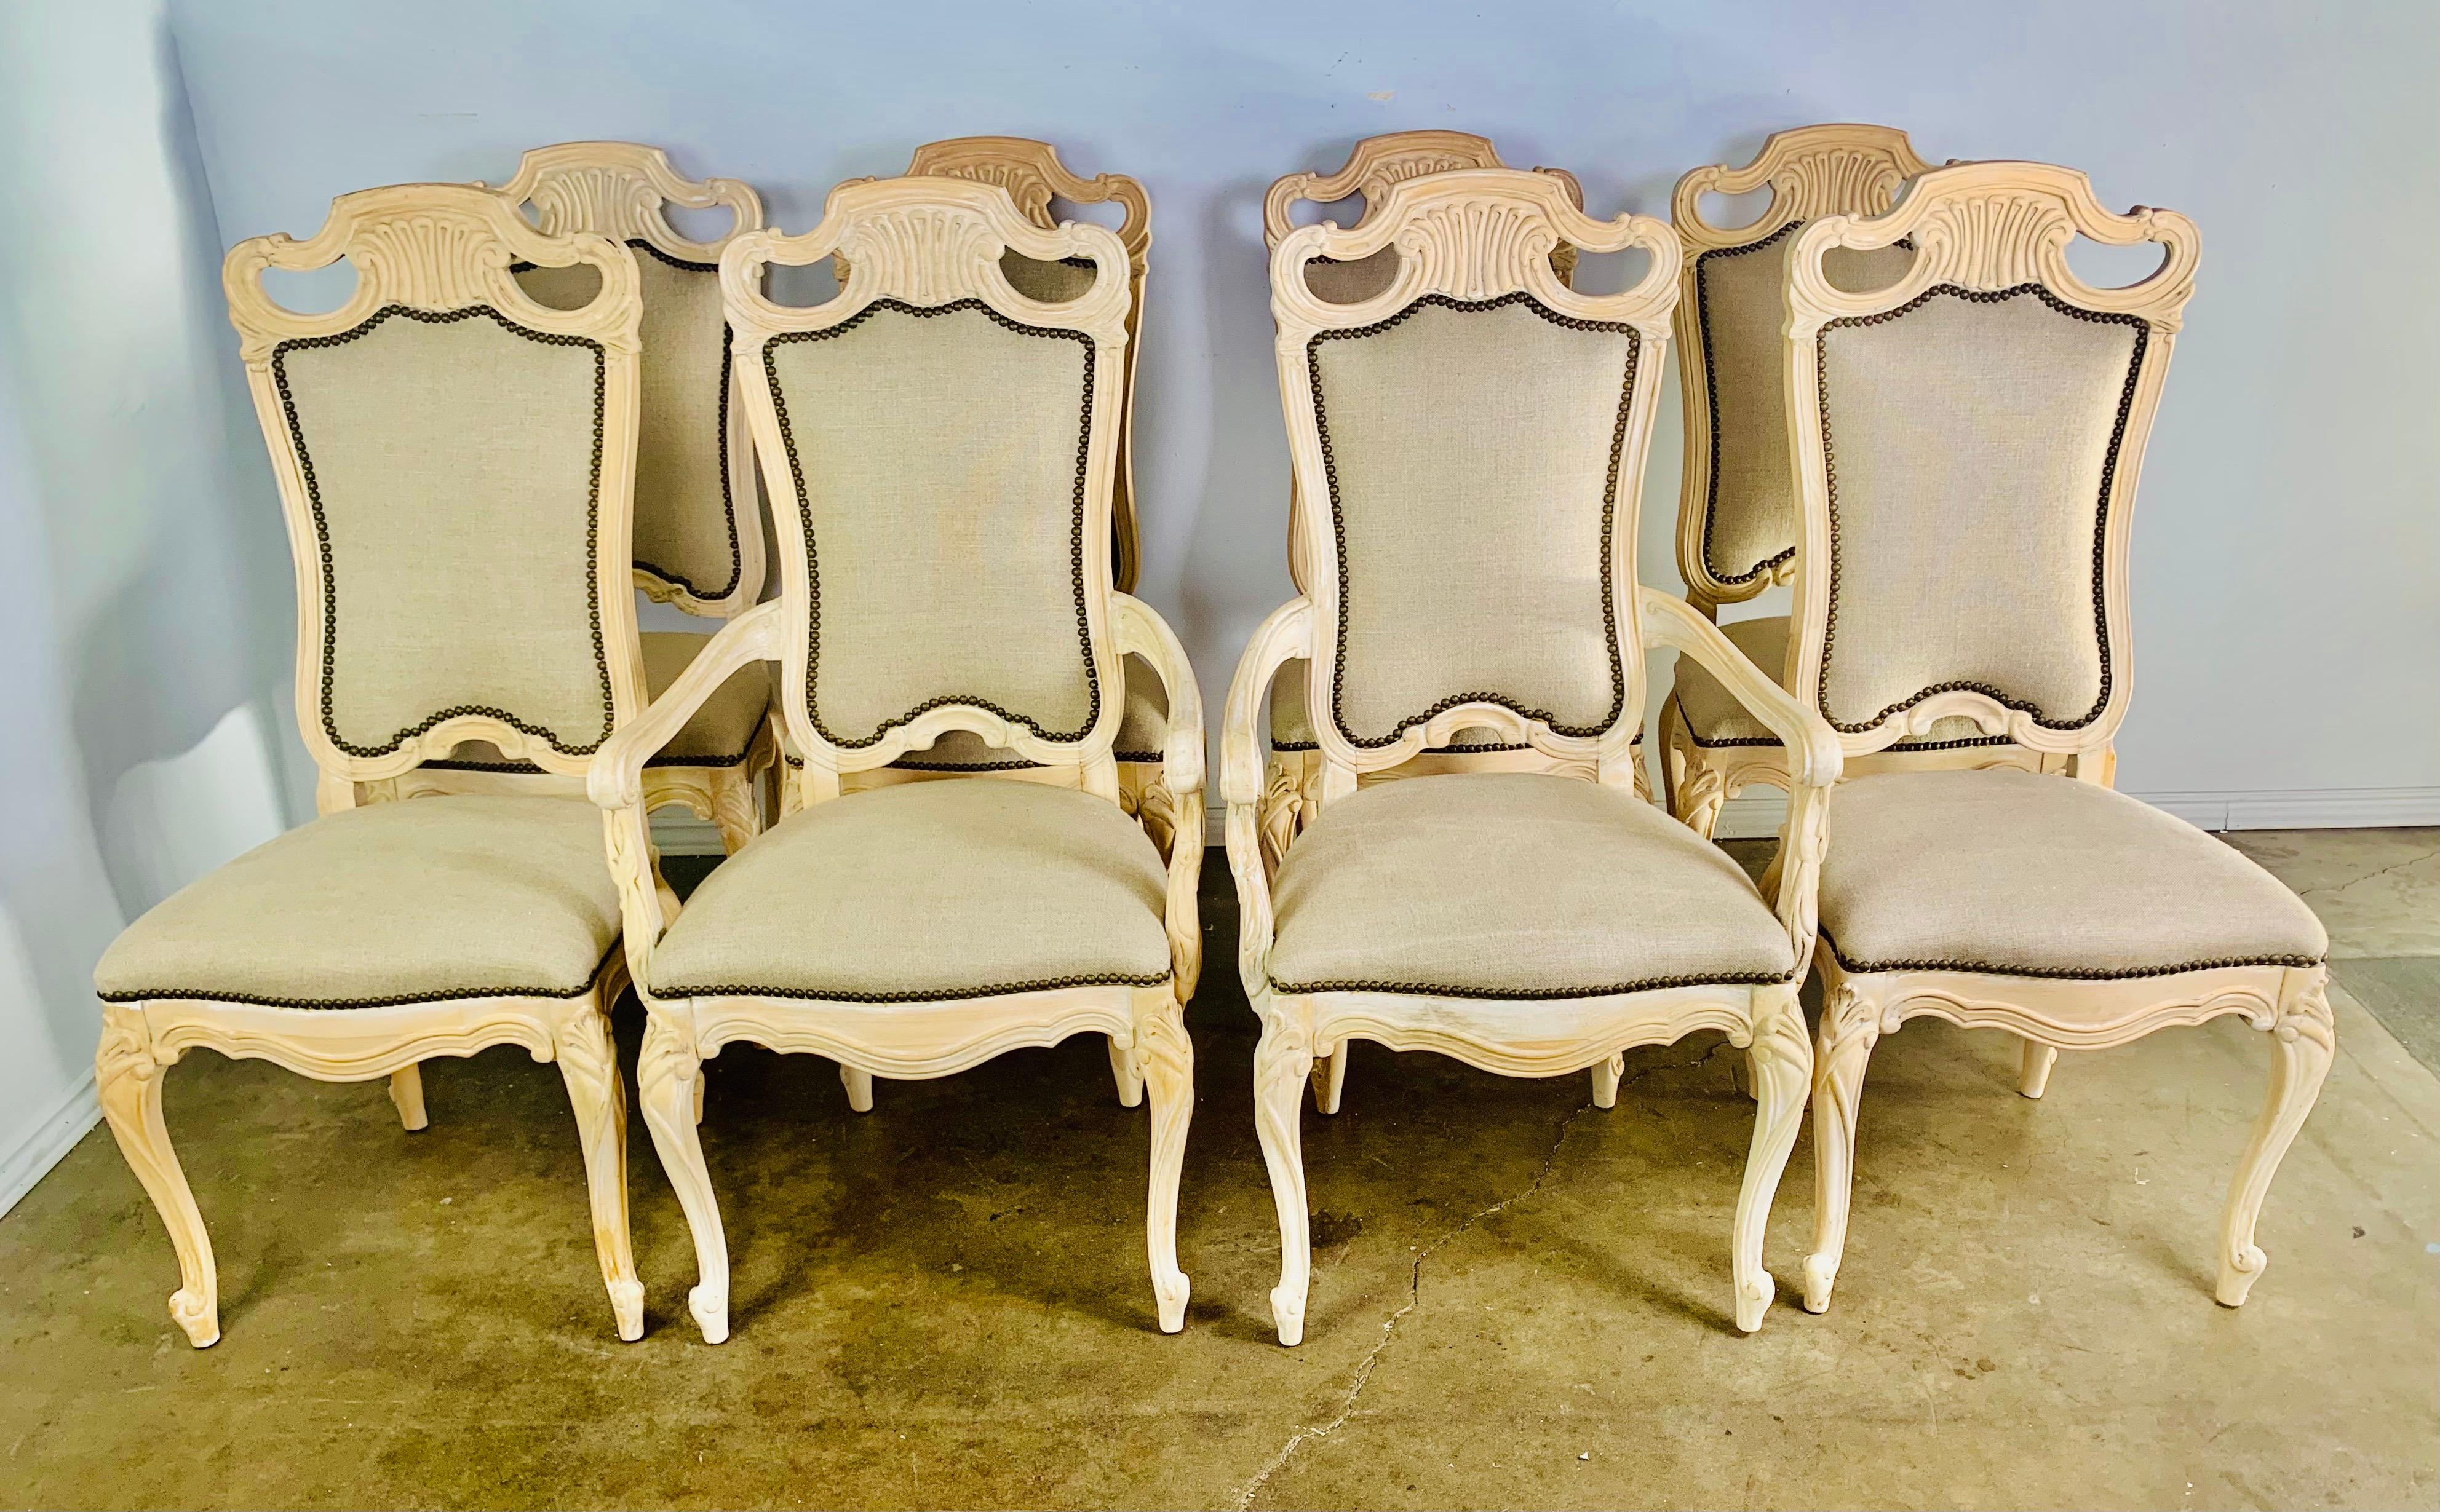 Satz von acht französischen Stühlen aus geschnitztem Naturholz. Die Stühle stehen auf vier Cabriole-Beinen mit Widderkopffüßen. Die Stühle sind neu mit gewaschenem belgischem Leinen gepolstert und mit Nagelköpfen verziert.

Größe des Sessels: 23